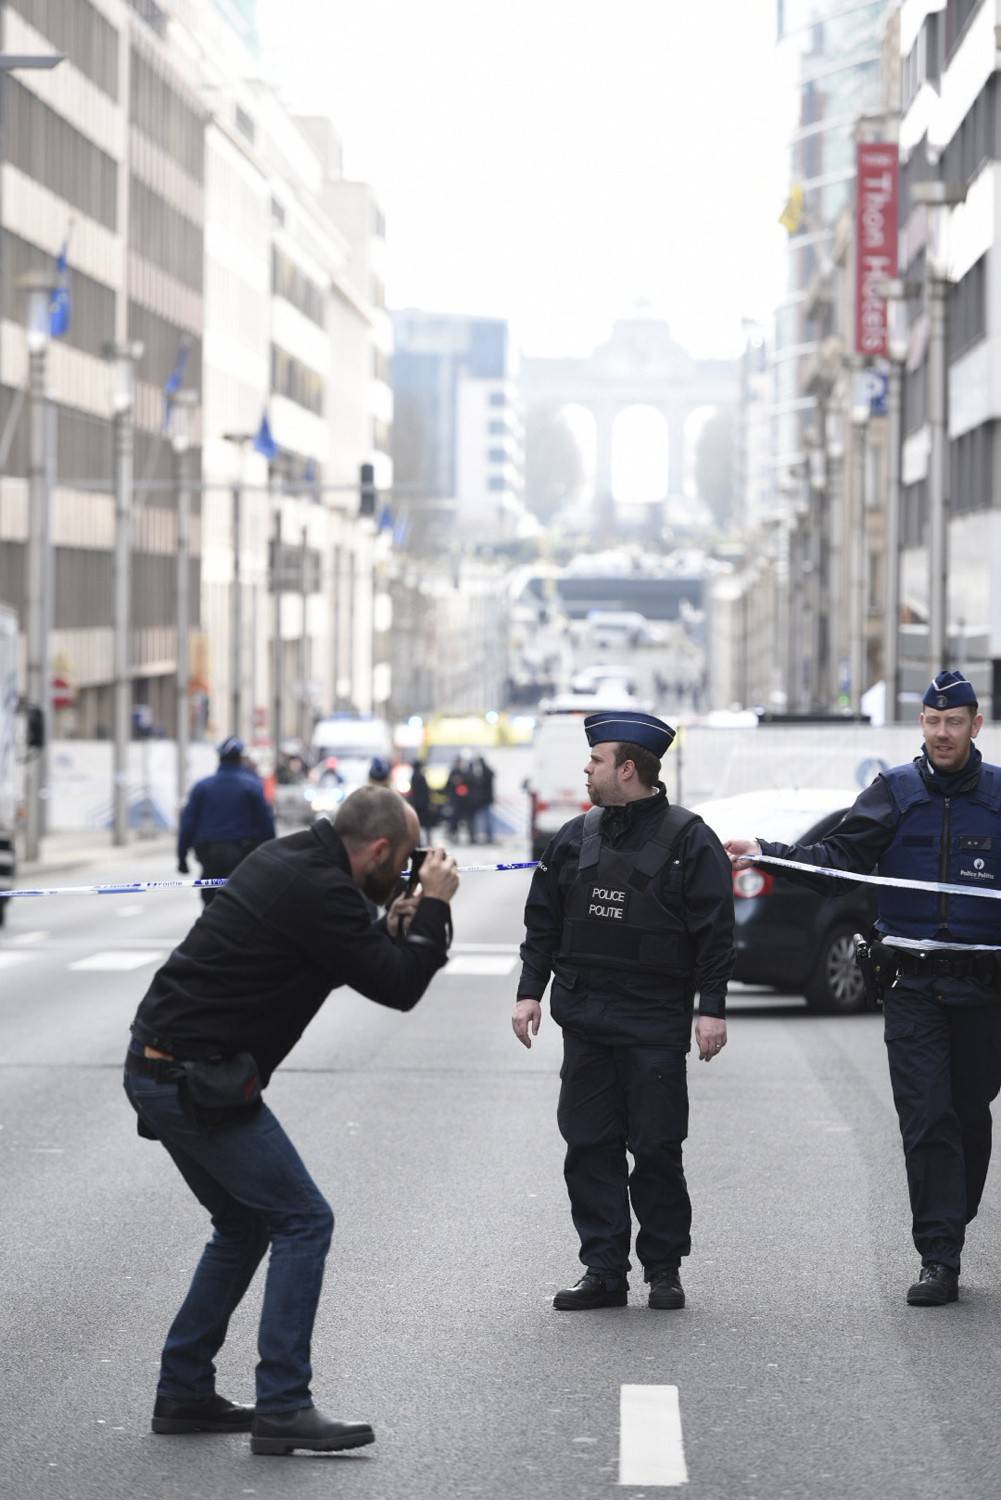 Sul web spopolano le "profezie" dopo gli attacchi di Bruxelles